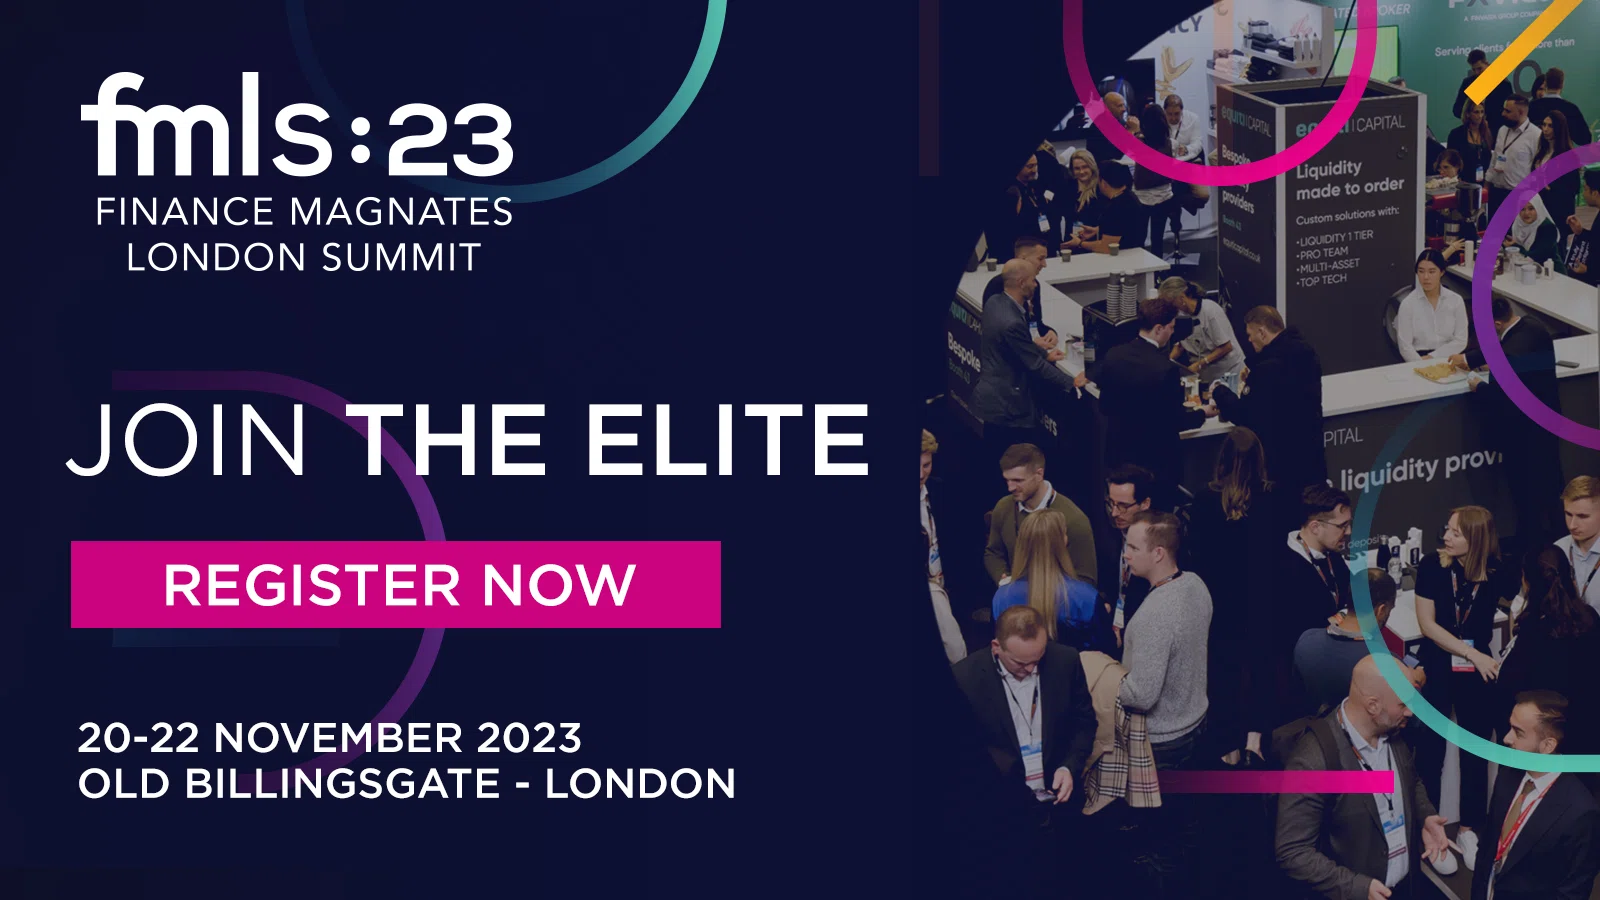 Finance Magnates London Summit